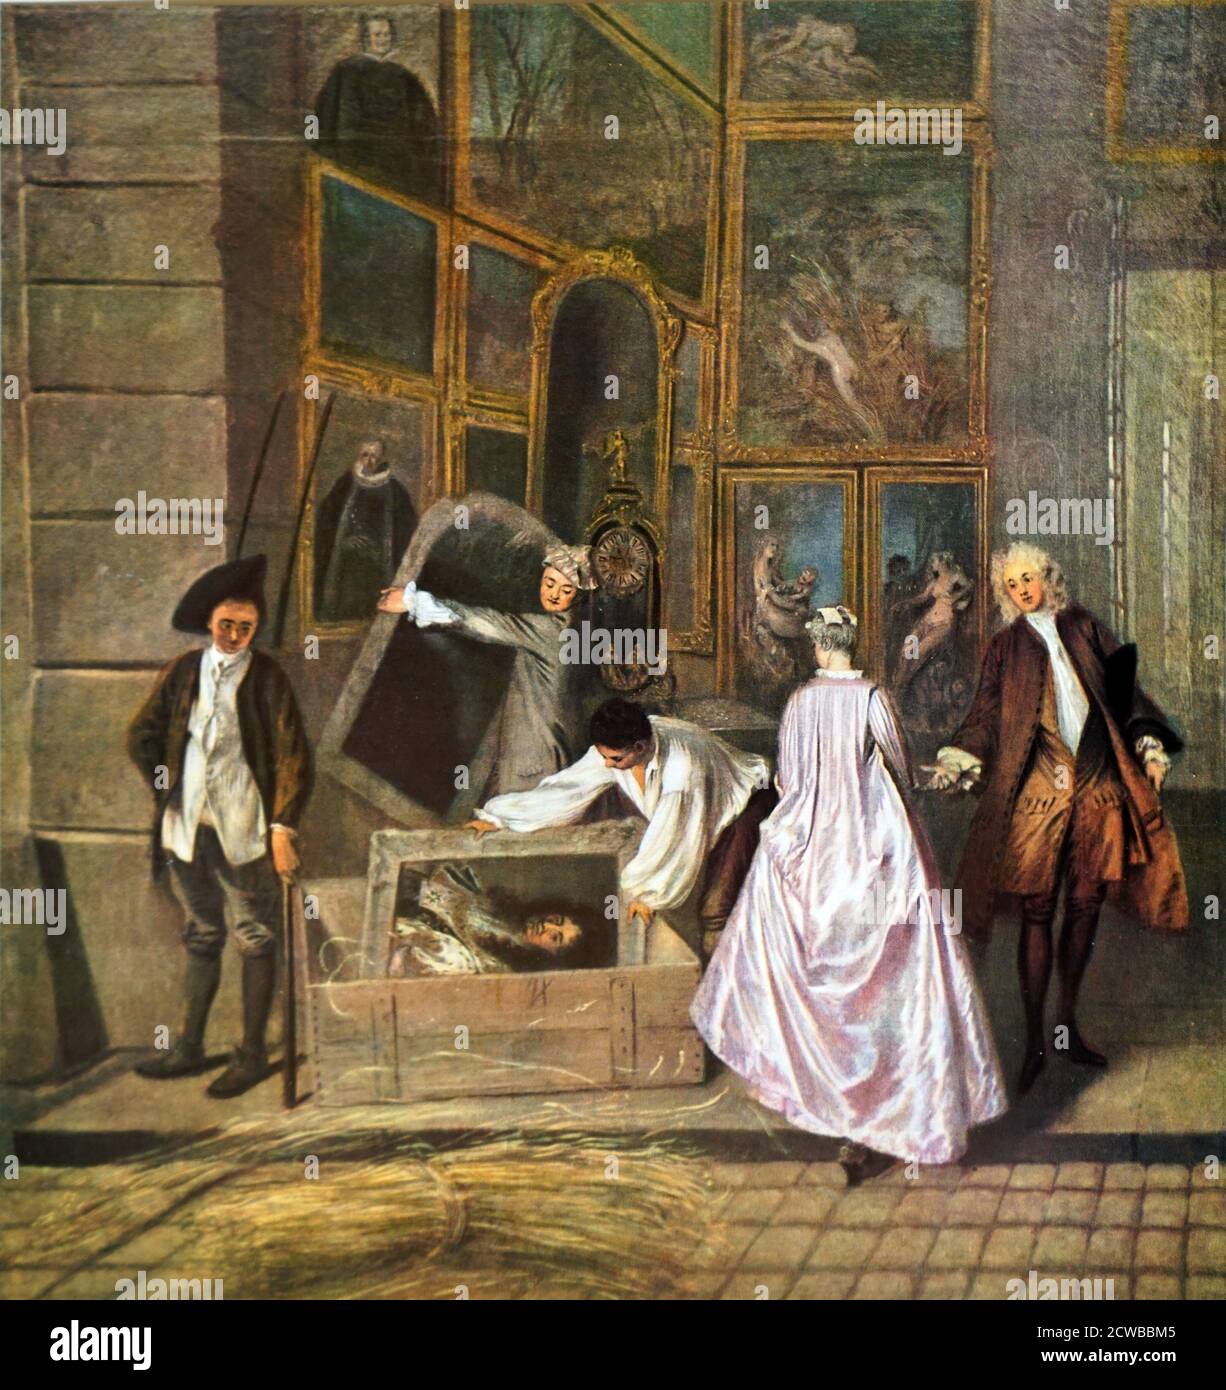 L'enseigne de Gersaint (la muestra de la tienda de Gersaint); óleo sobre  pintura de lienzo en el Palacio de Charlottenburg en Berlín, por el pintor  francés Jean-Antoine Watteau. Terminado en 1720-21. Se